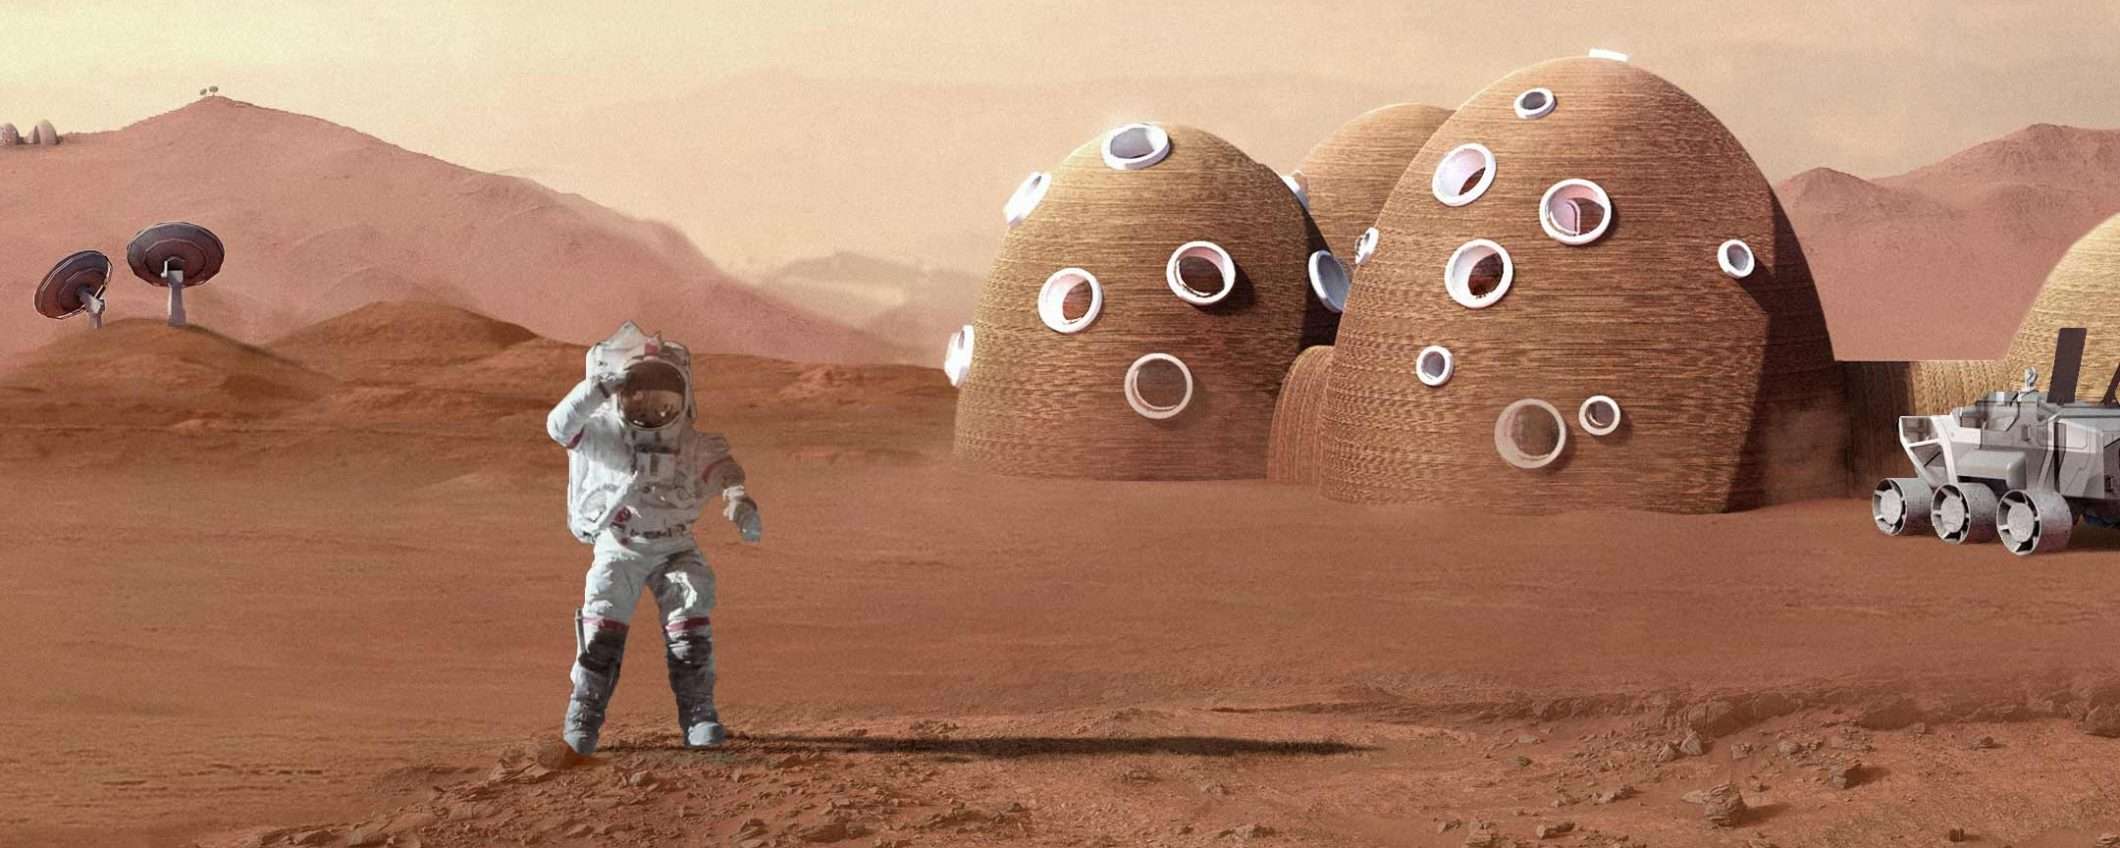 La stampa 3D di ICON per le colonie su Luna e Marte